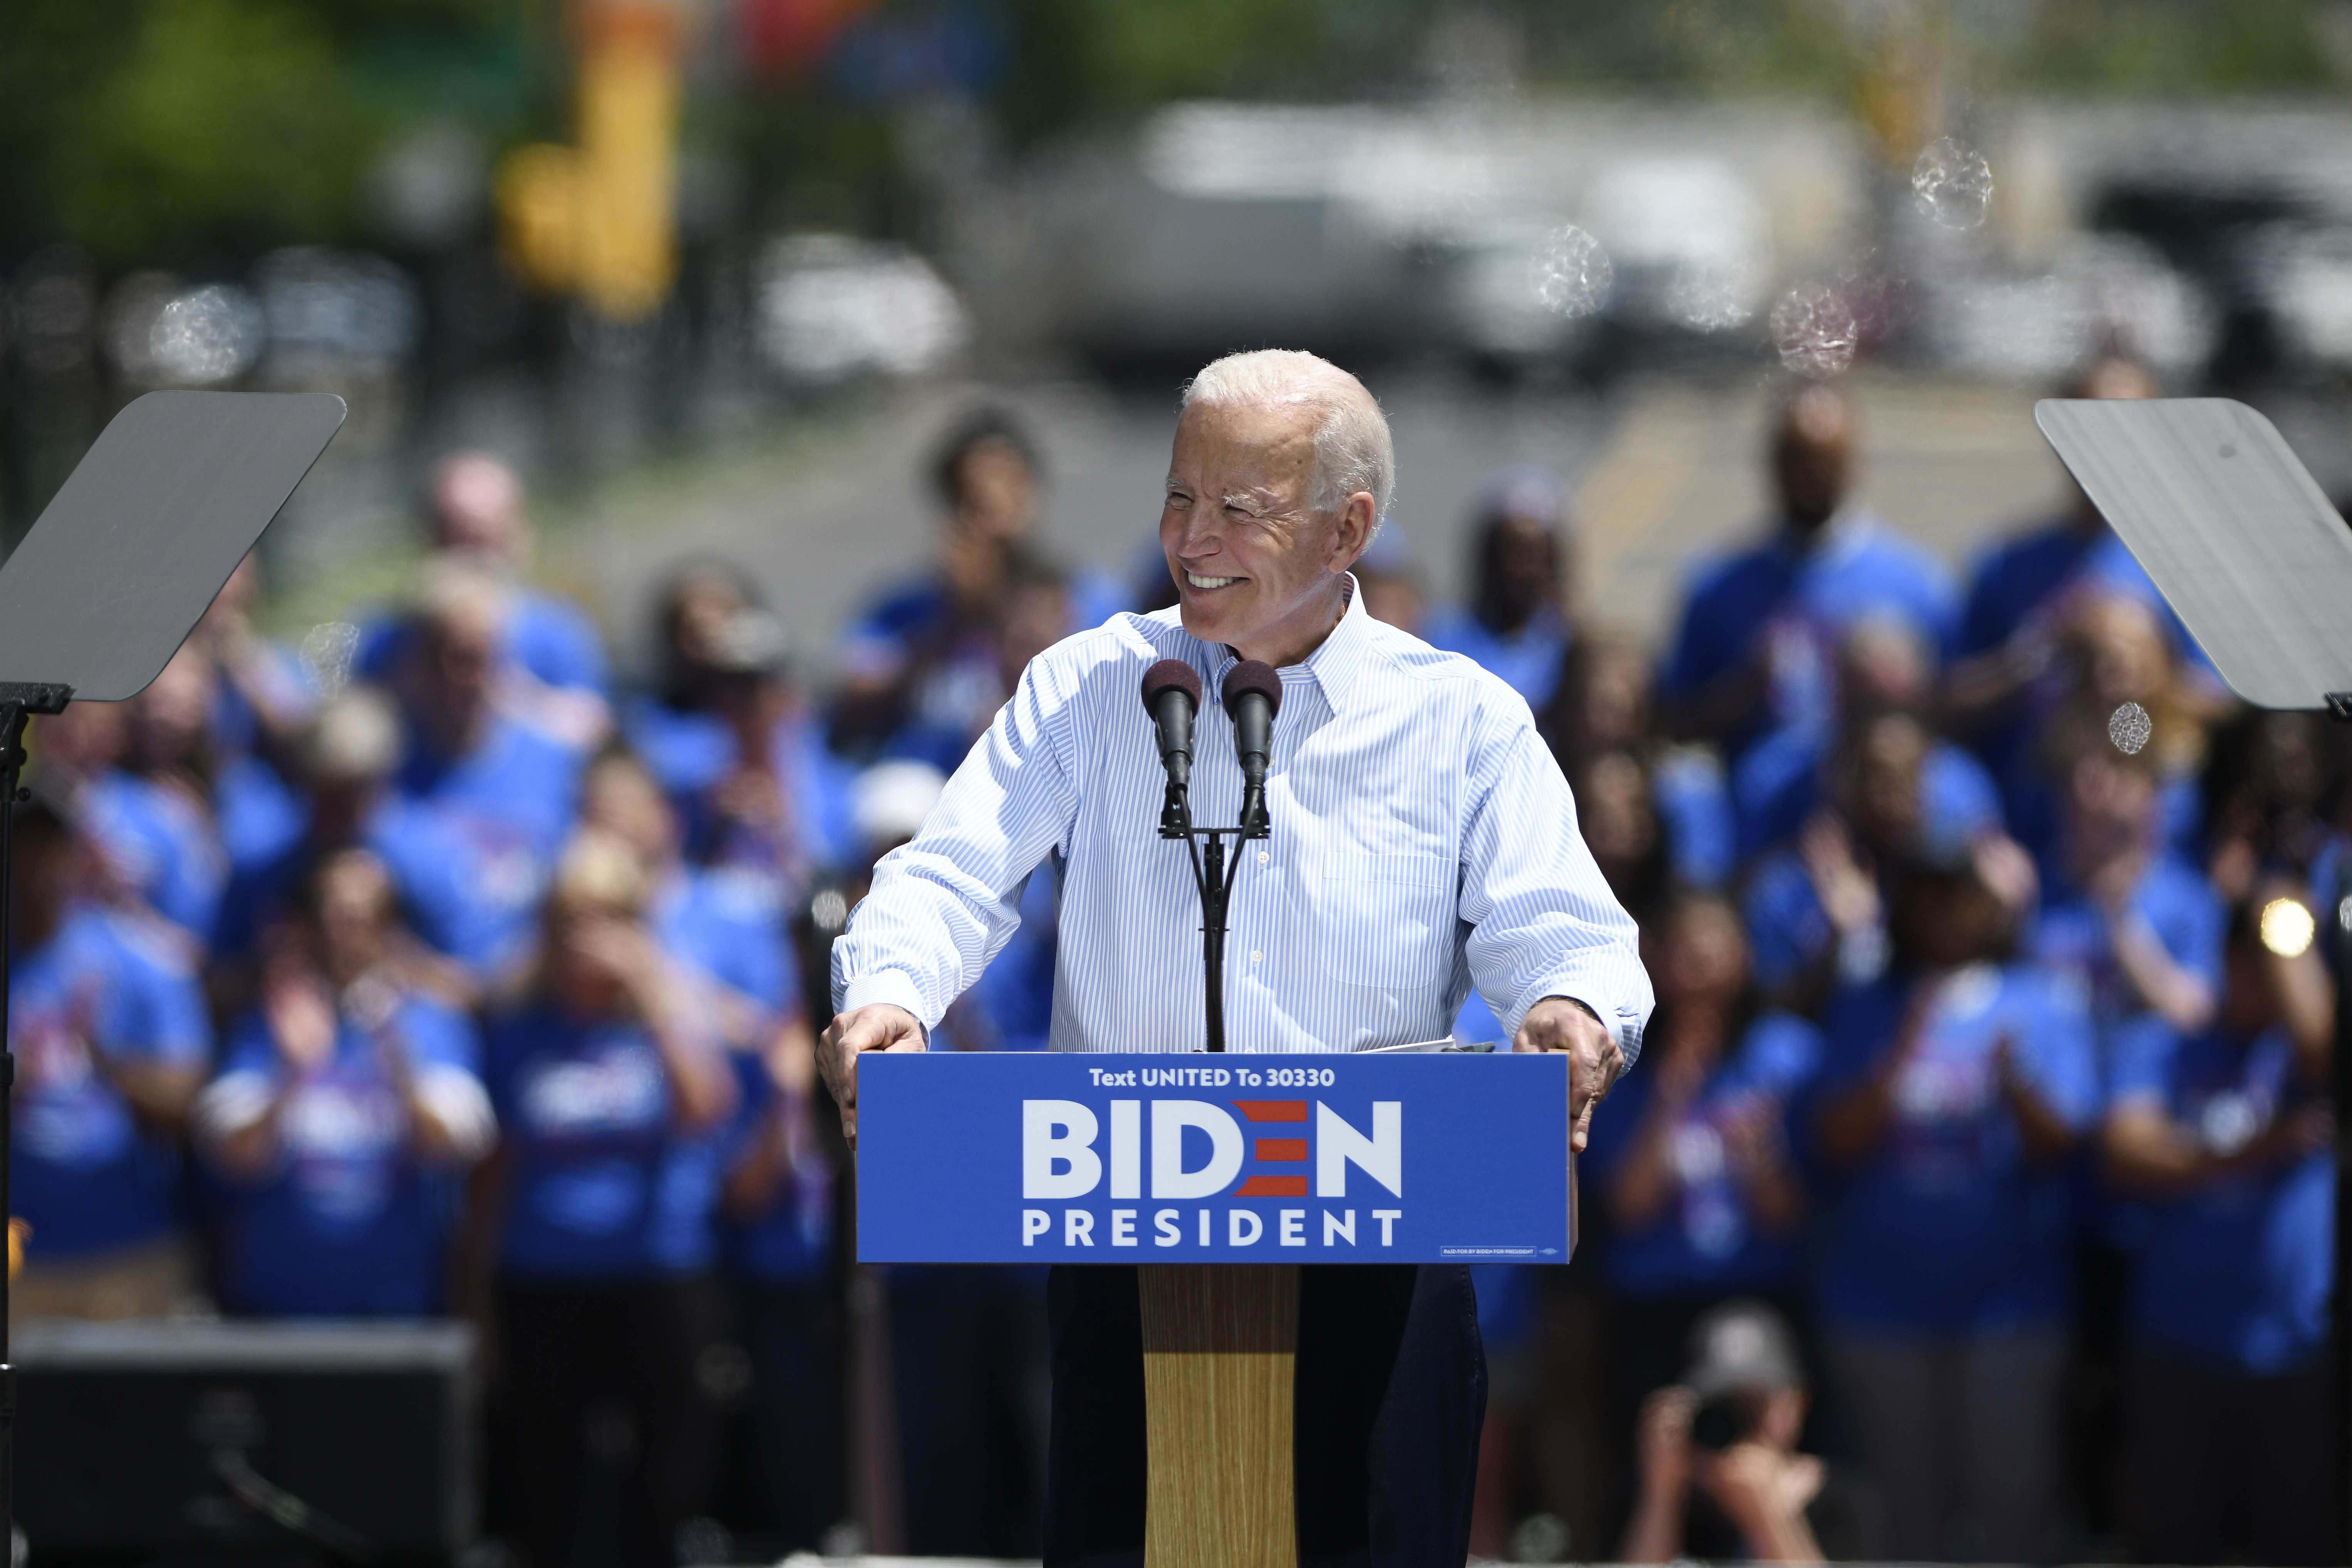 El presidente electo, Joe Biden, va conformando su equipo con el cual enfrentará el trabajo a partir del 20 de enero próximo.